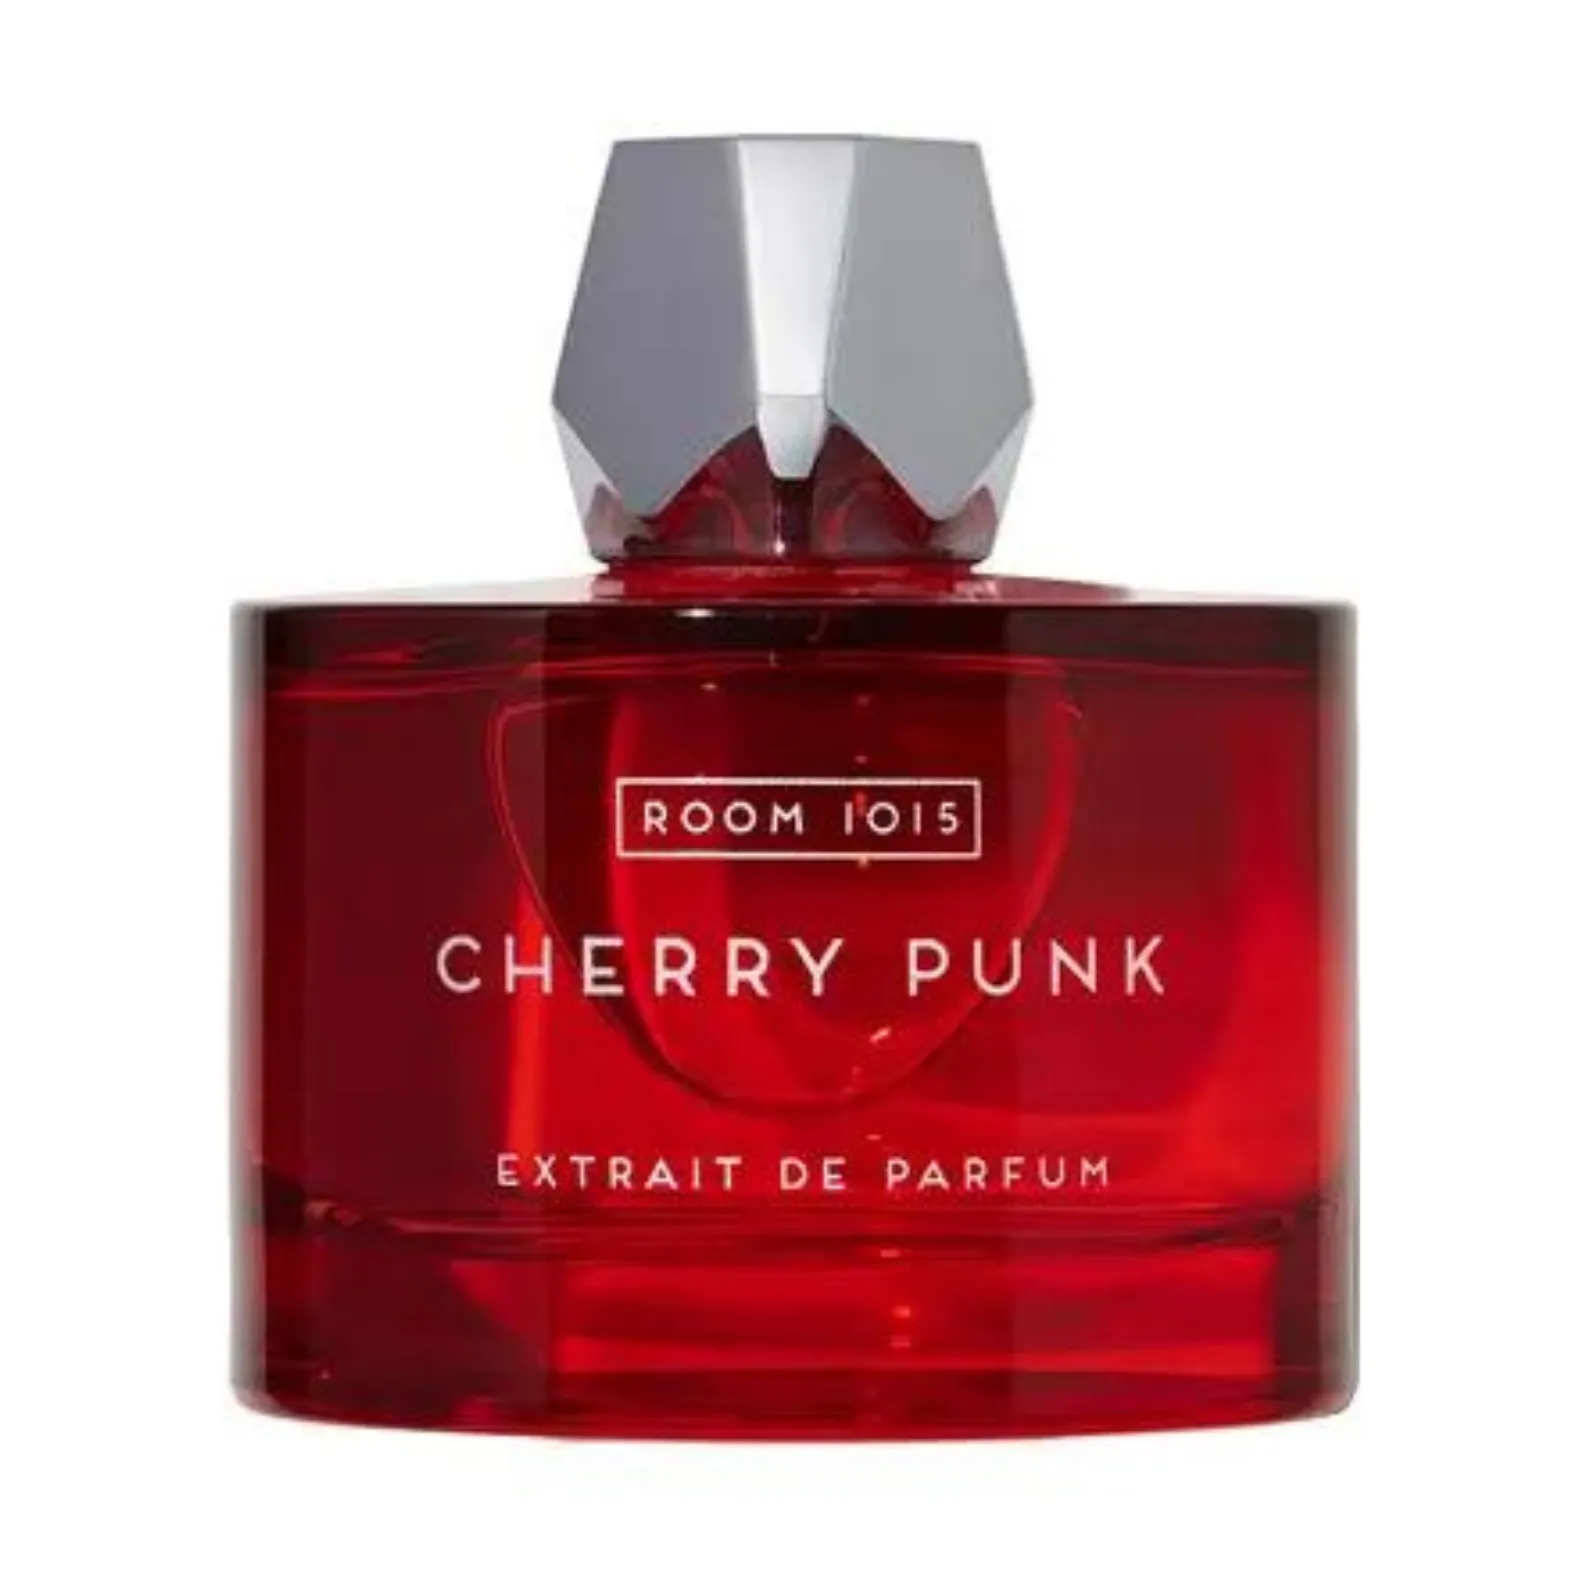 Cherry Punk Extrait de Parfum